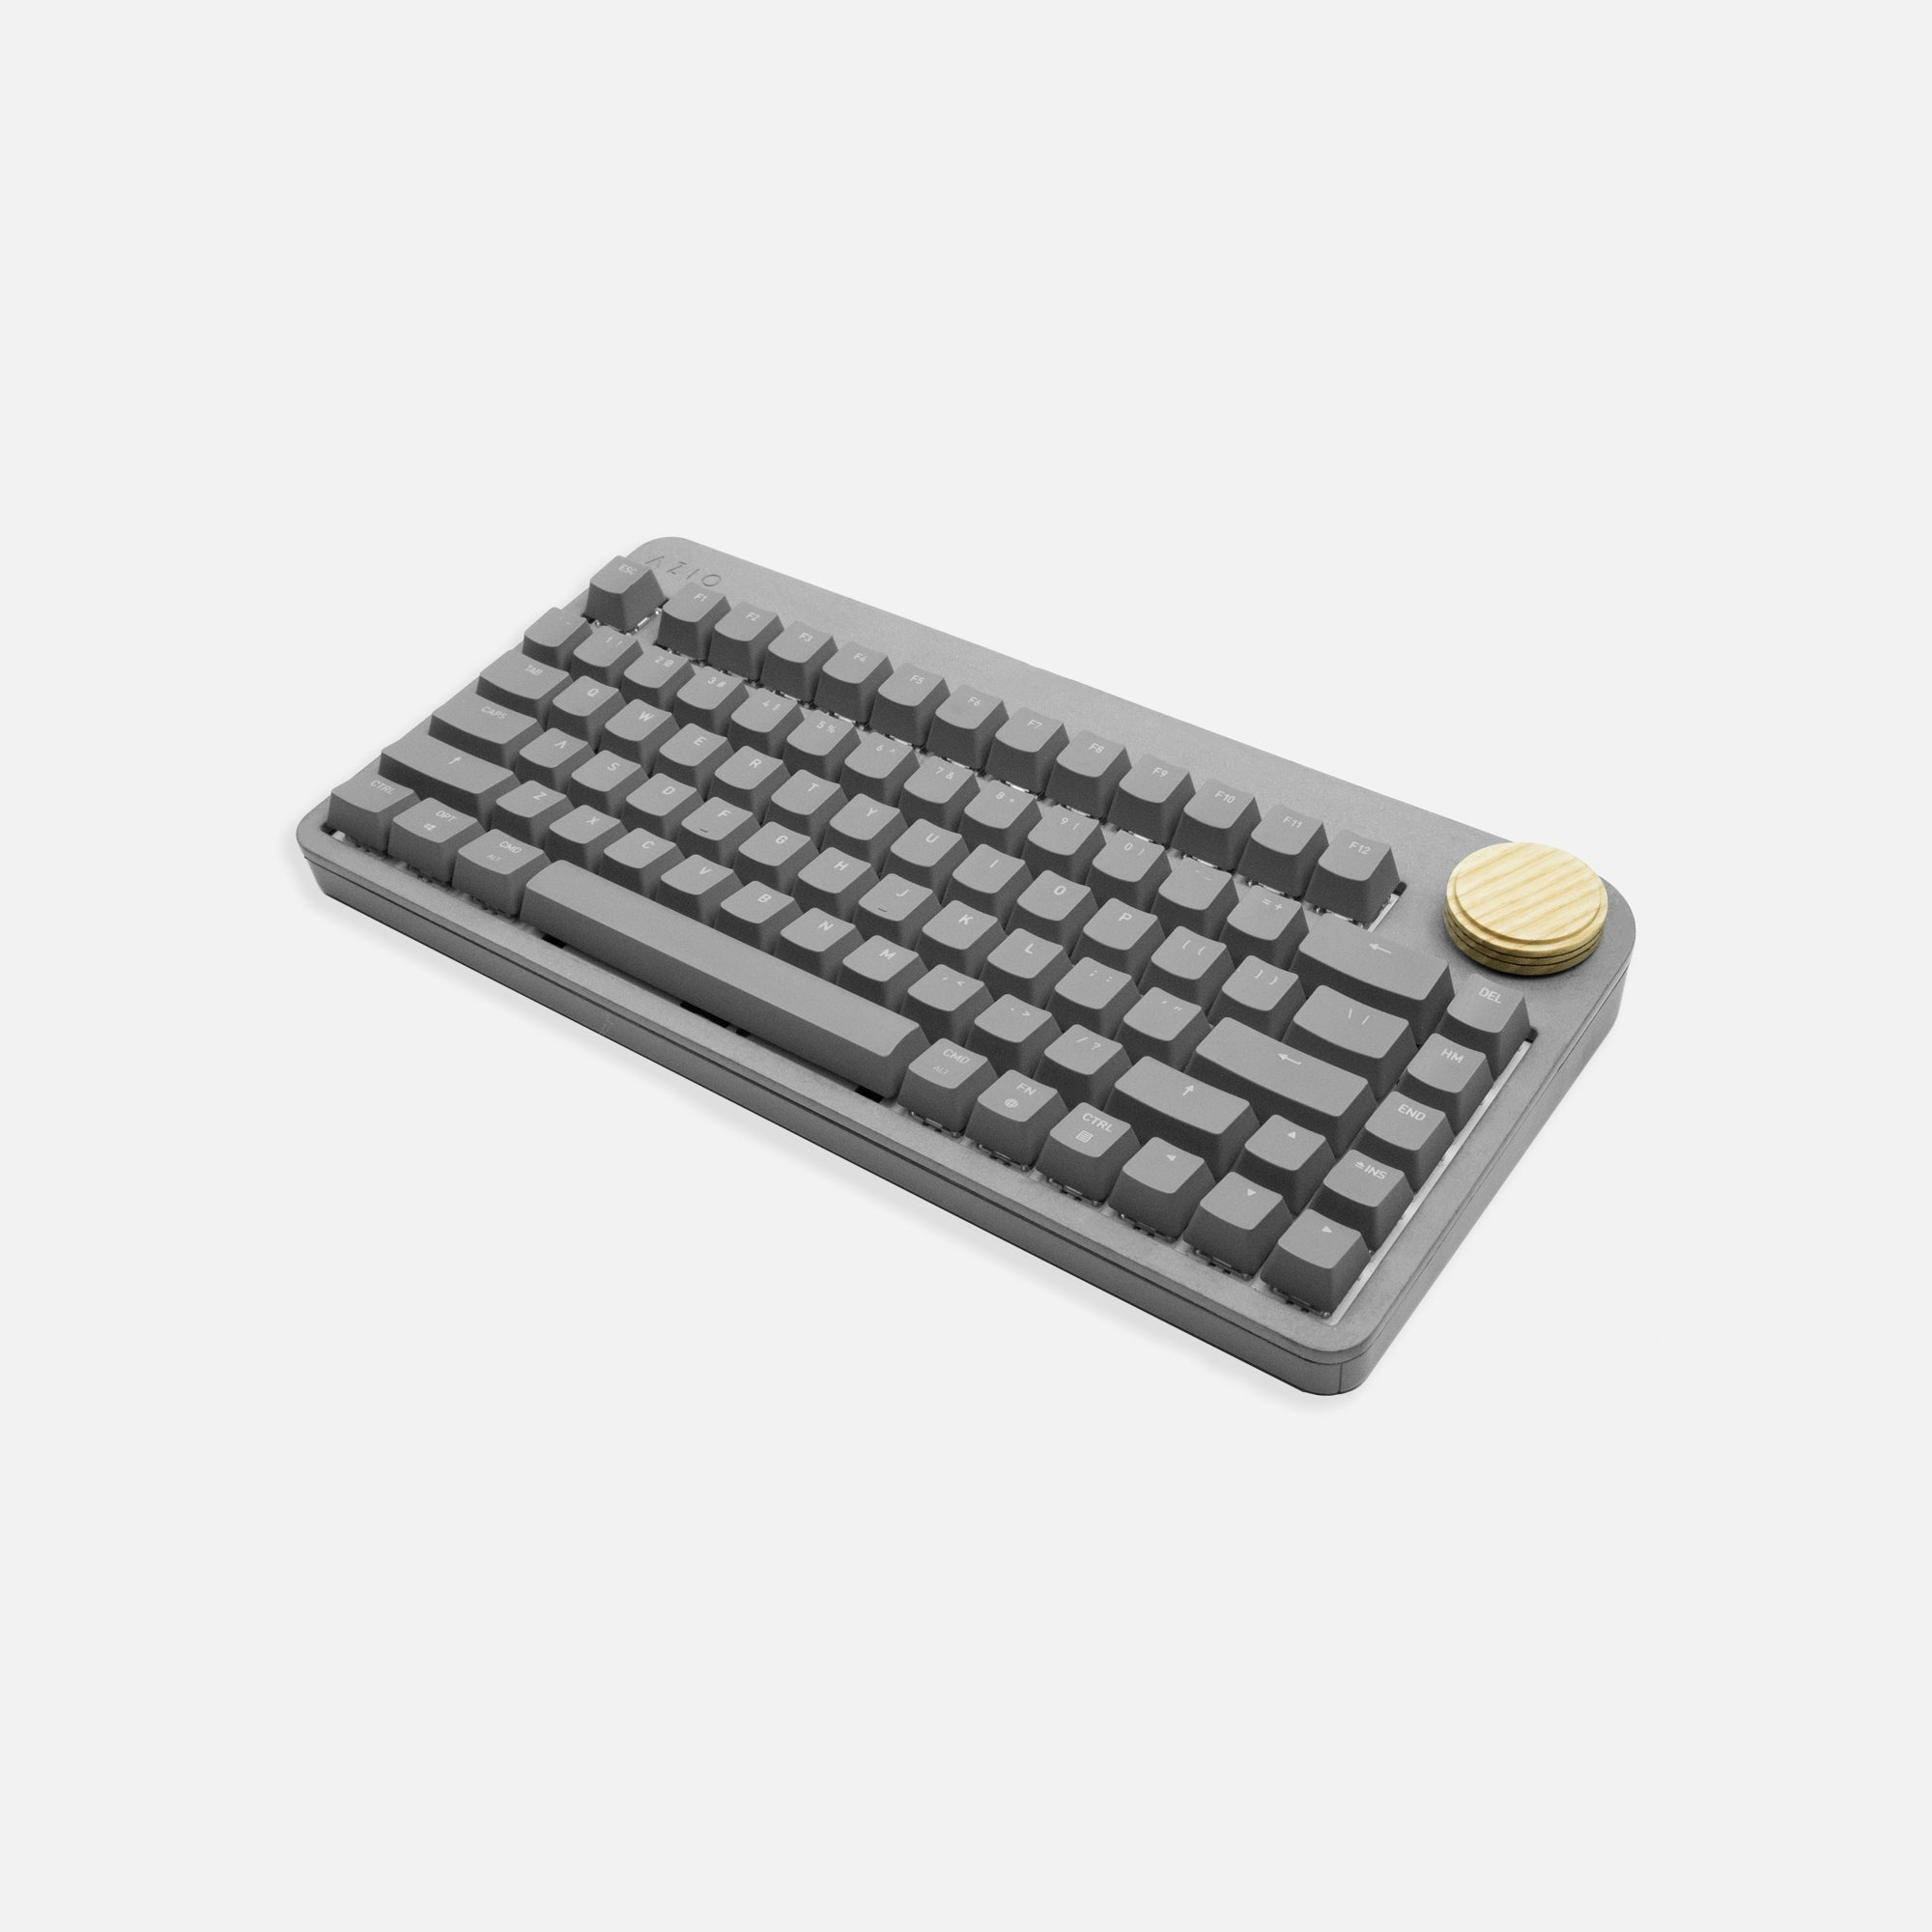 Tera75 draadloos toetsenbord